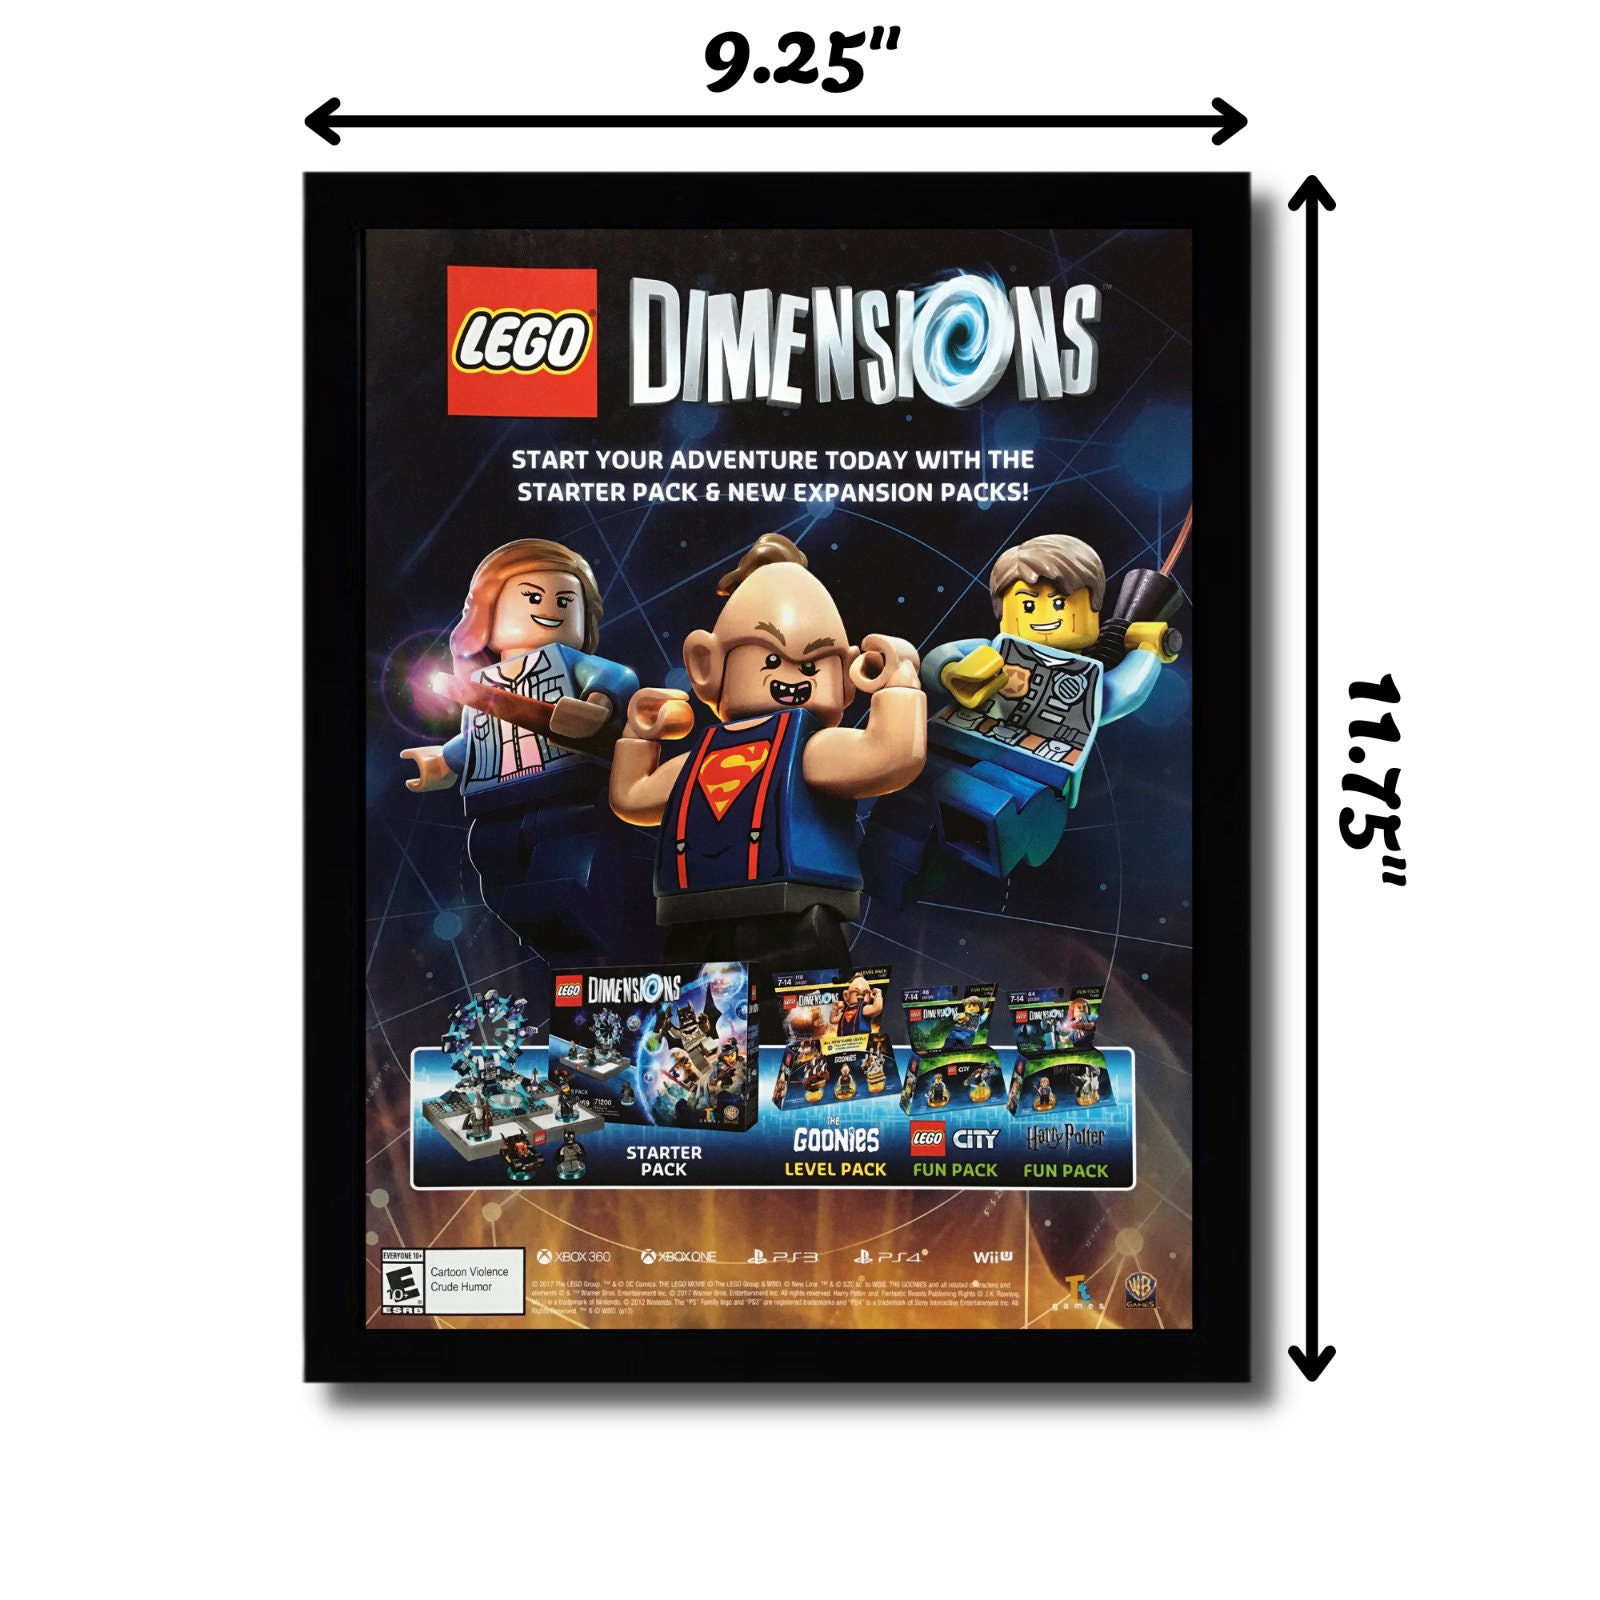 sagde bison uddannelse 2017 LEGO Dimensions Framed Print Ad/poster PS4 Xbox One - Etsy Israel